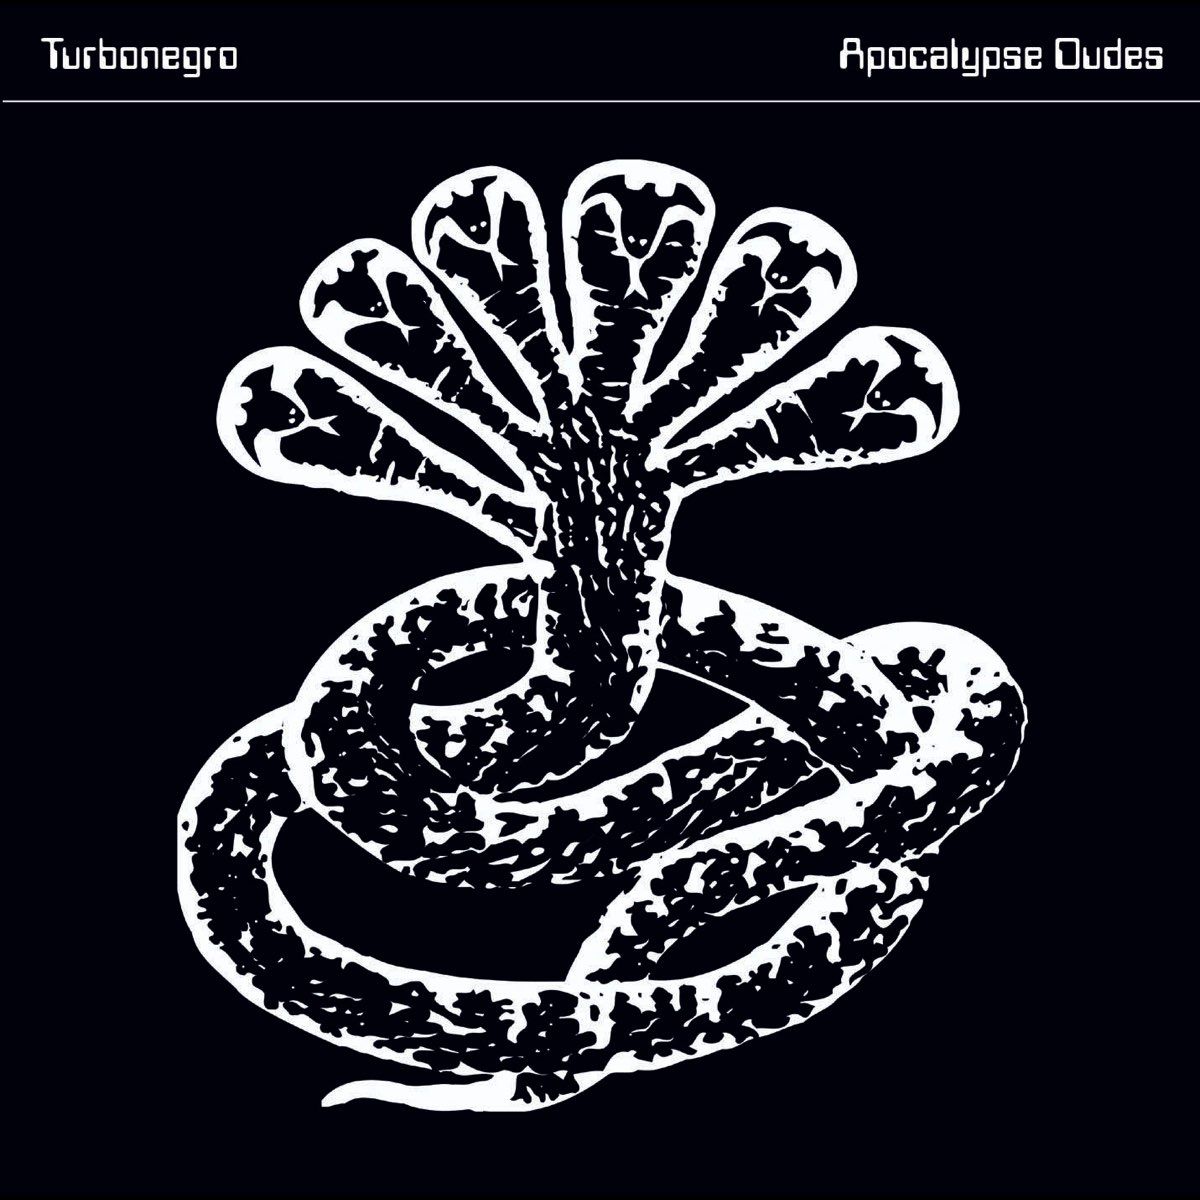 Turbonegro - Apocalypse Dudes